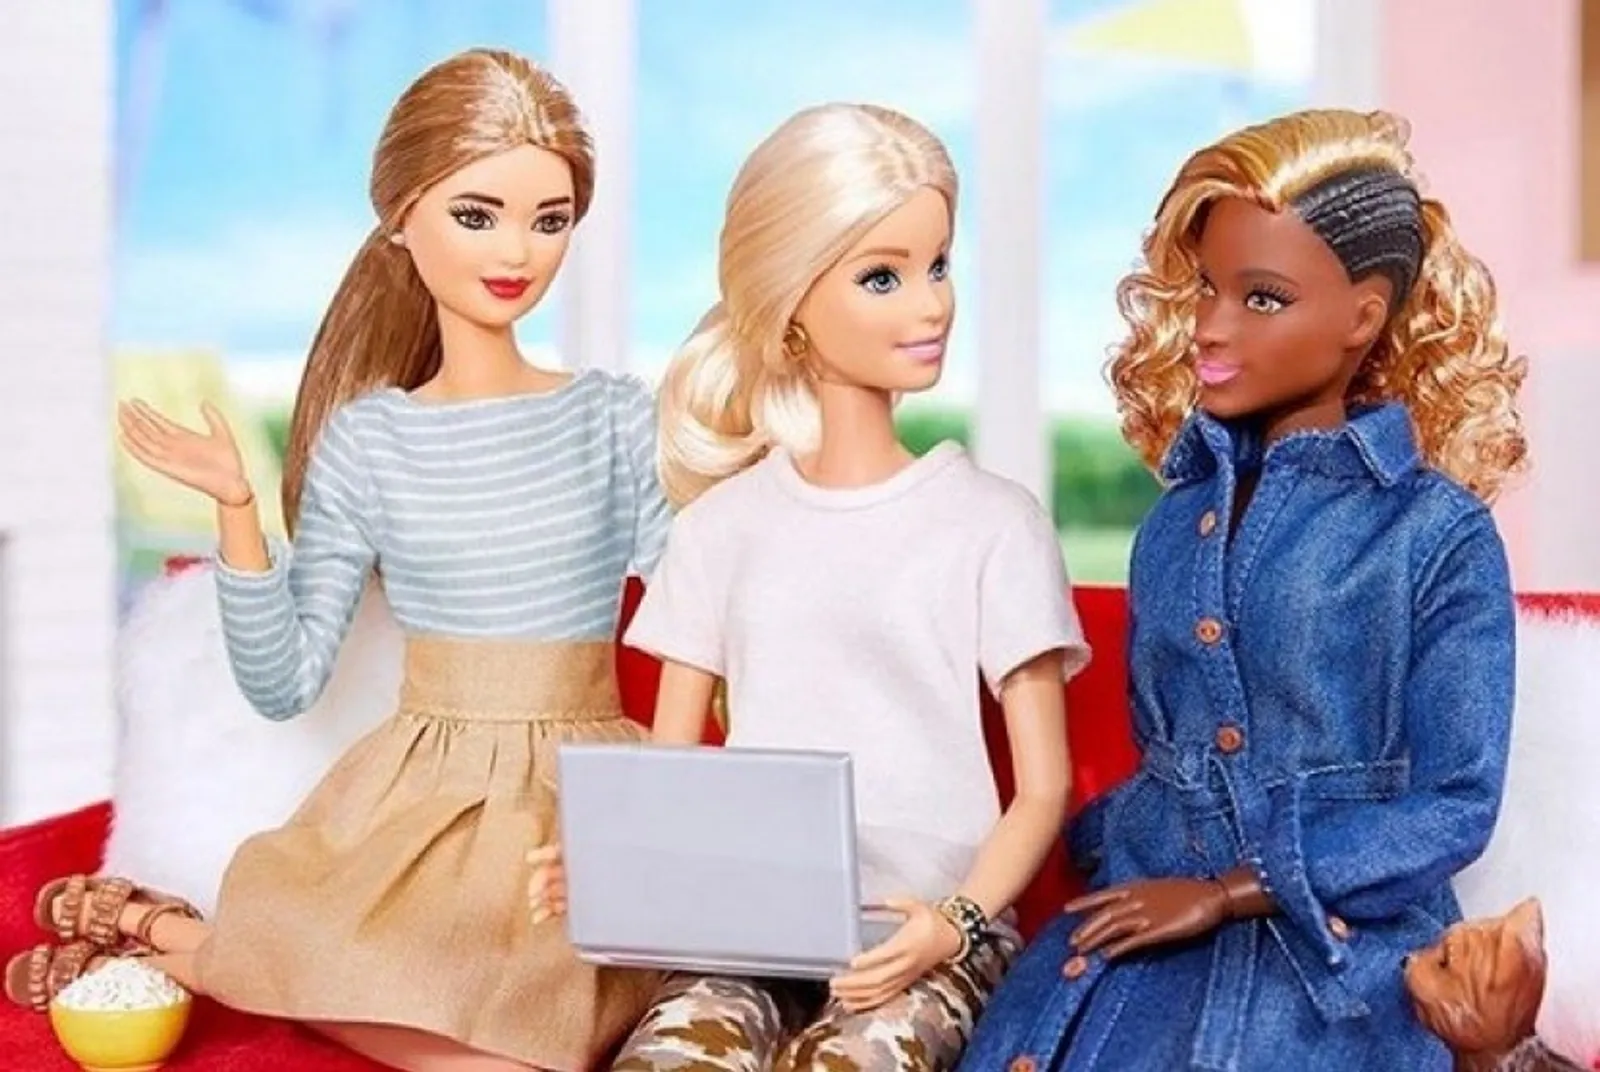 Ada Asal-Usul Barbie, Berikut 5 Fakta Random yang Mencengangkan